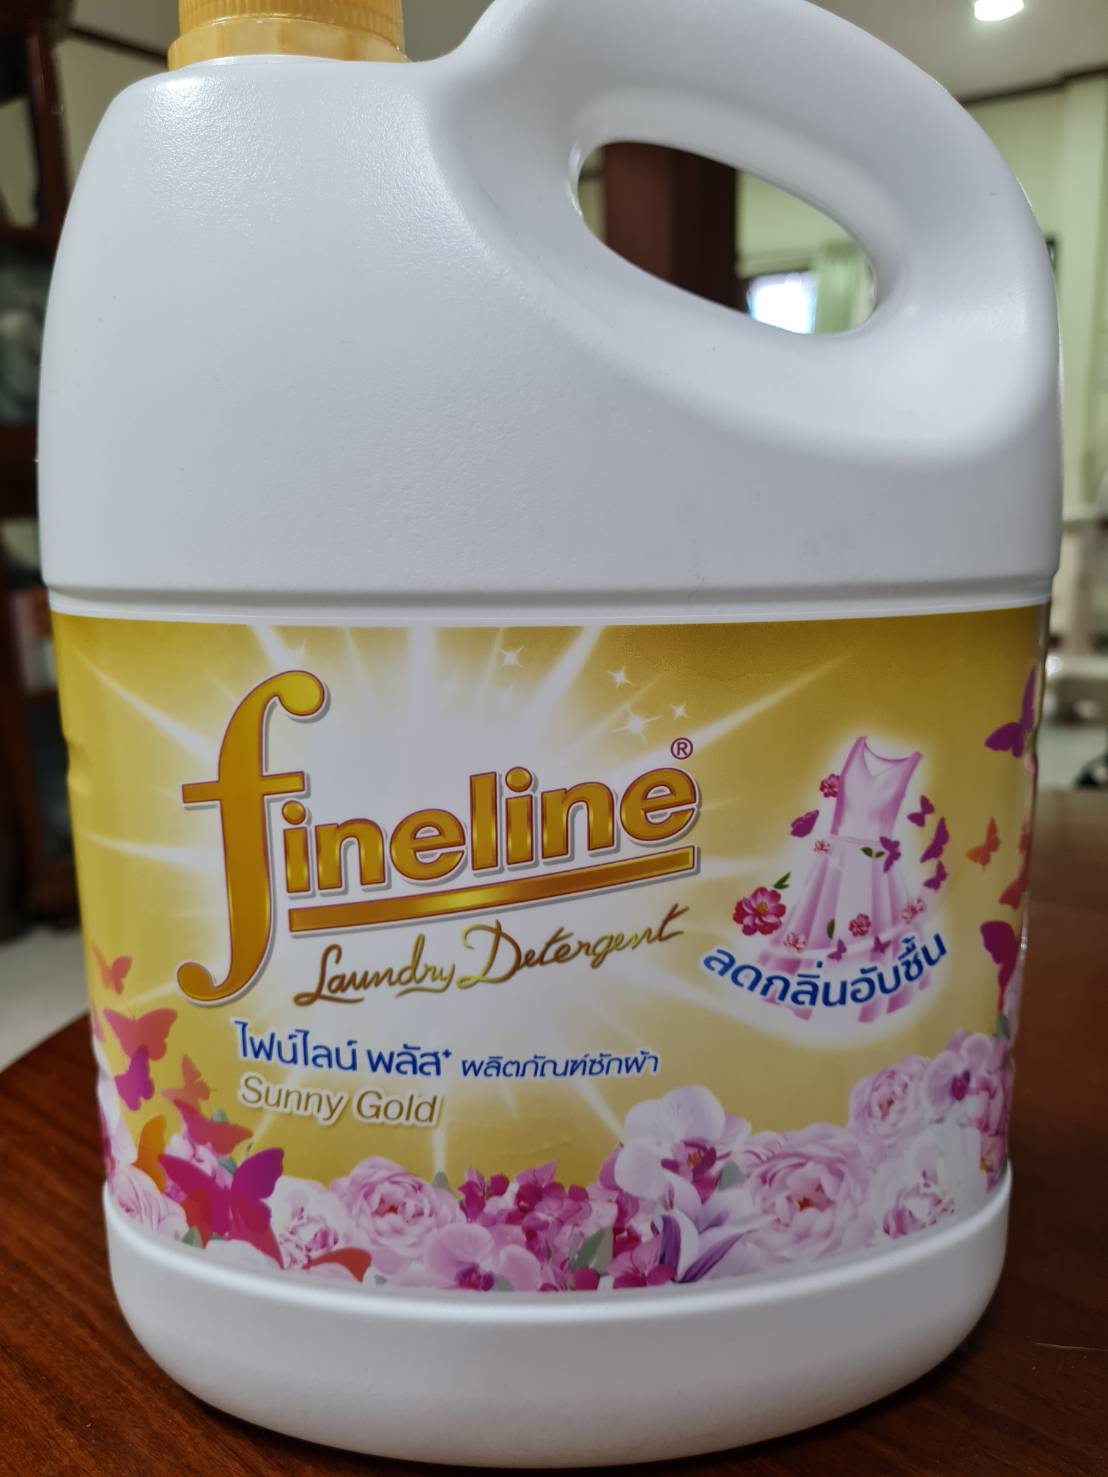 คนที่ใช้น้ำยาซักผ้า Fineline ว่าสีไหนหอมสุด - Pantip